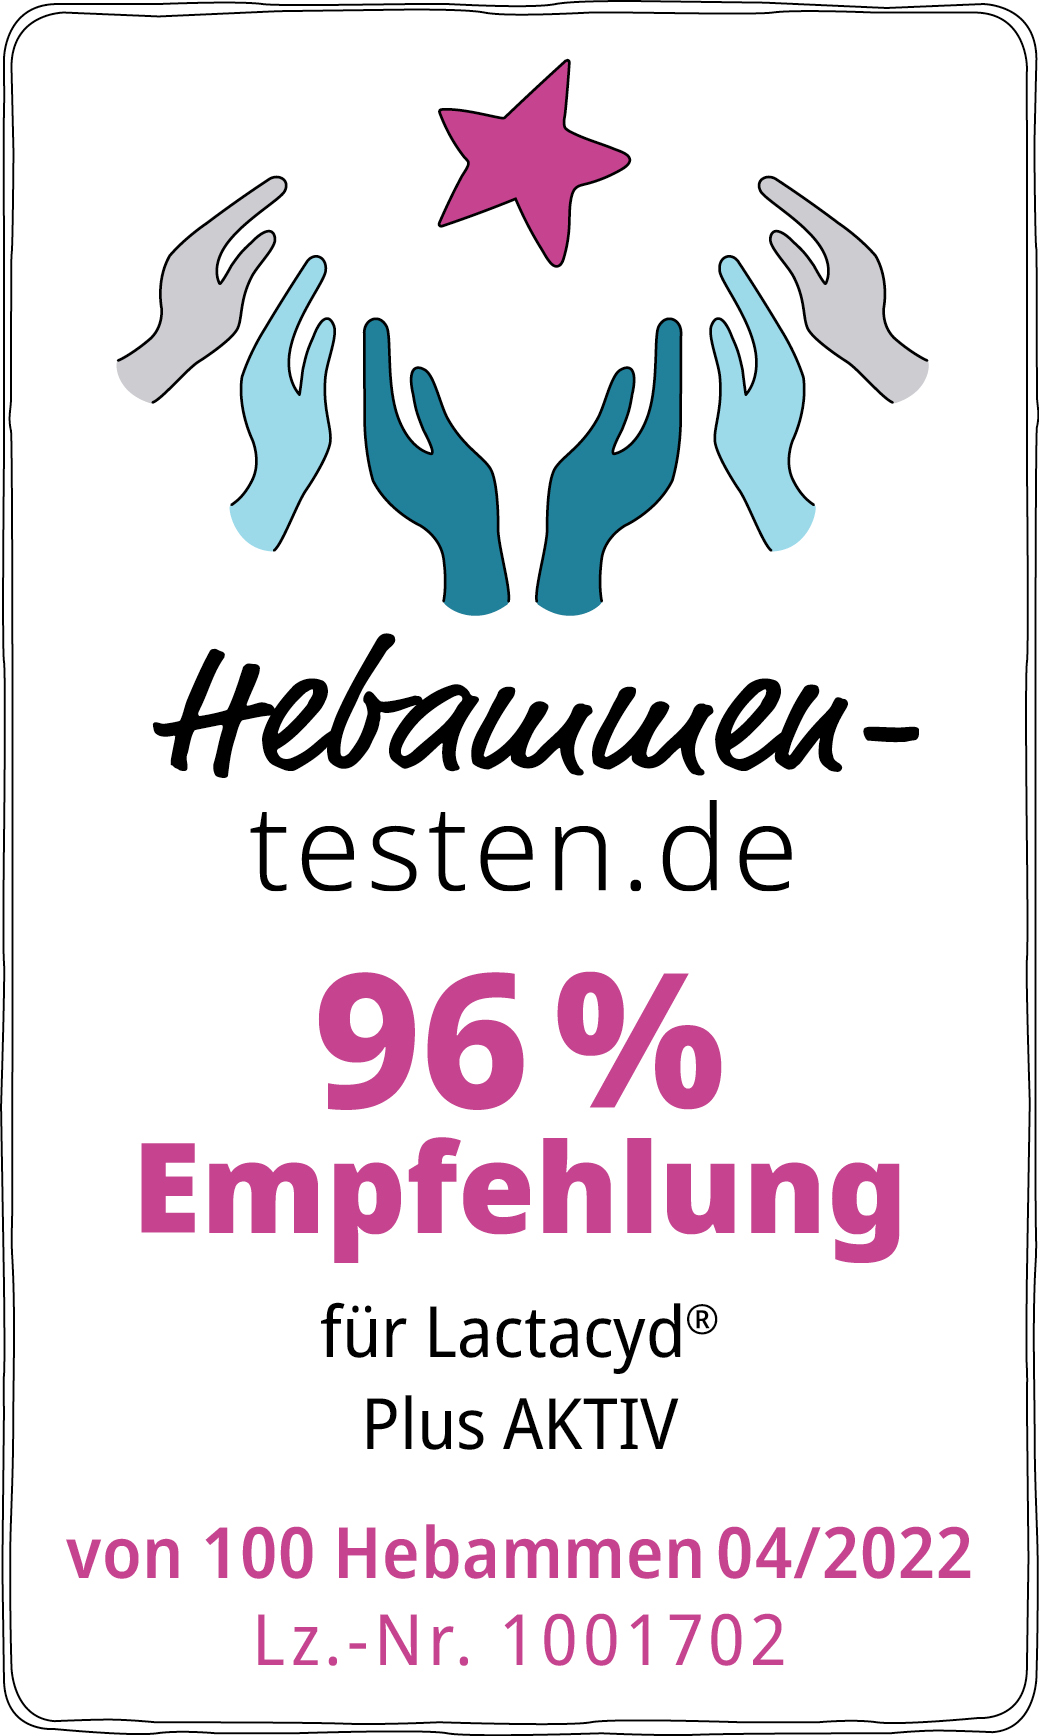 Hebammen-testen.de Siegel für Lactacyd Plus AKTIV 96 % Empfehlung von 100 Hebammen im April 2022 getestet.